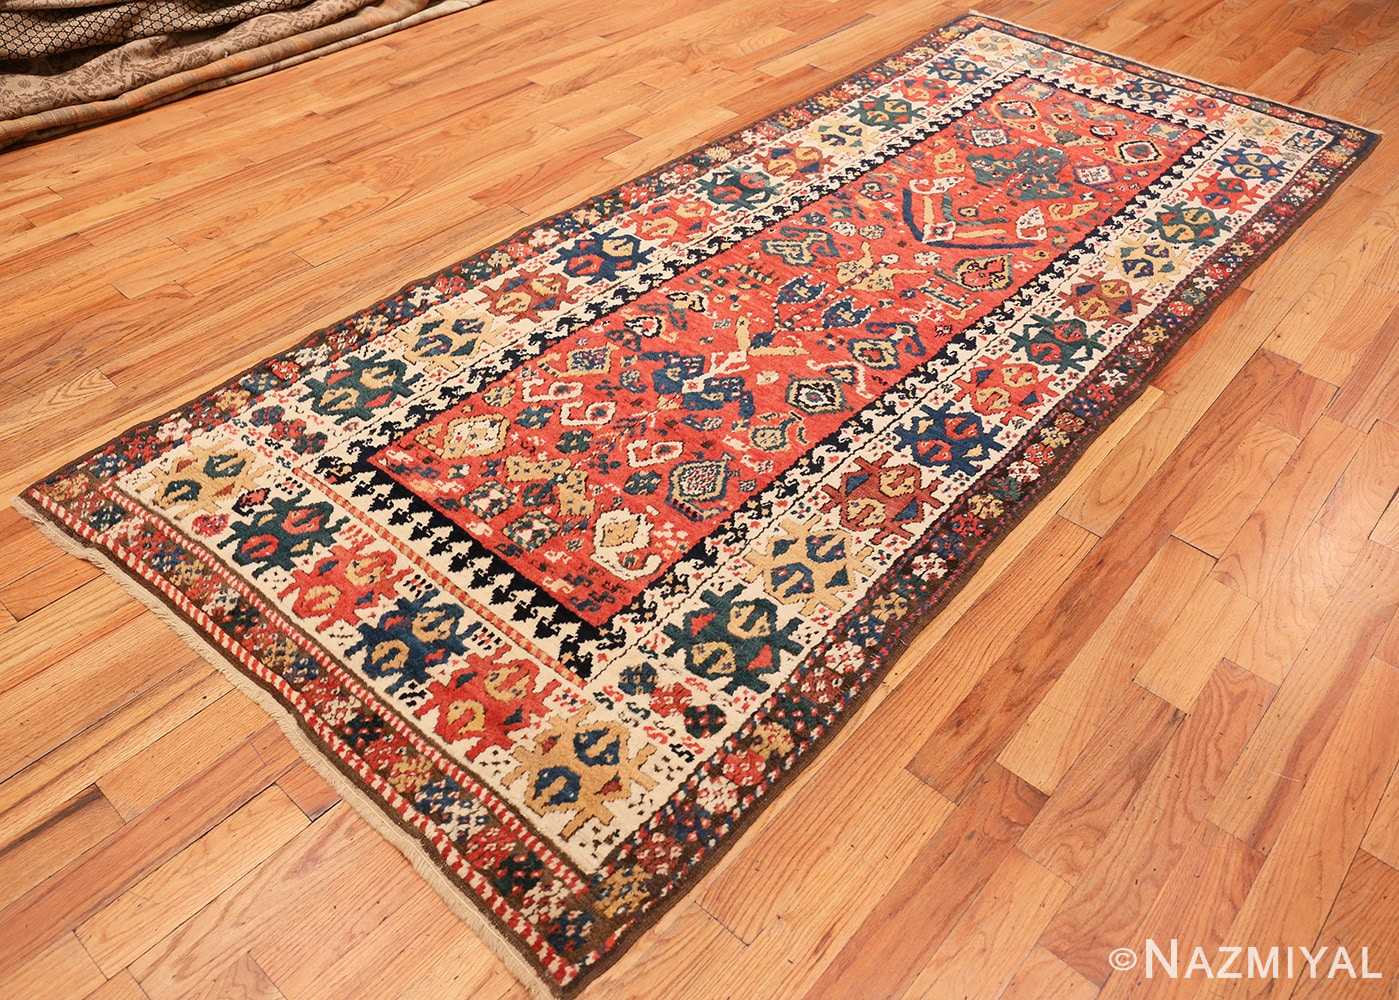 Full Antique Kazak Caucasian rug 70122 by Nazmiyal